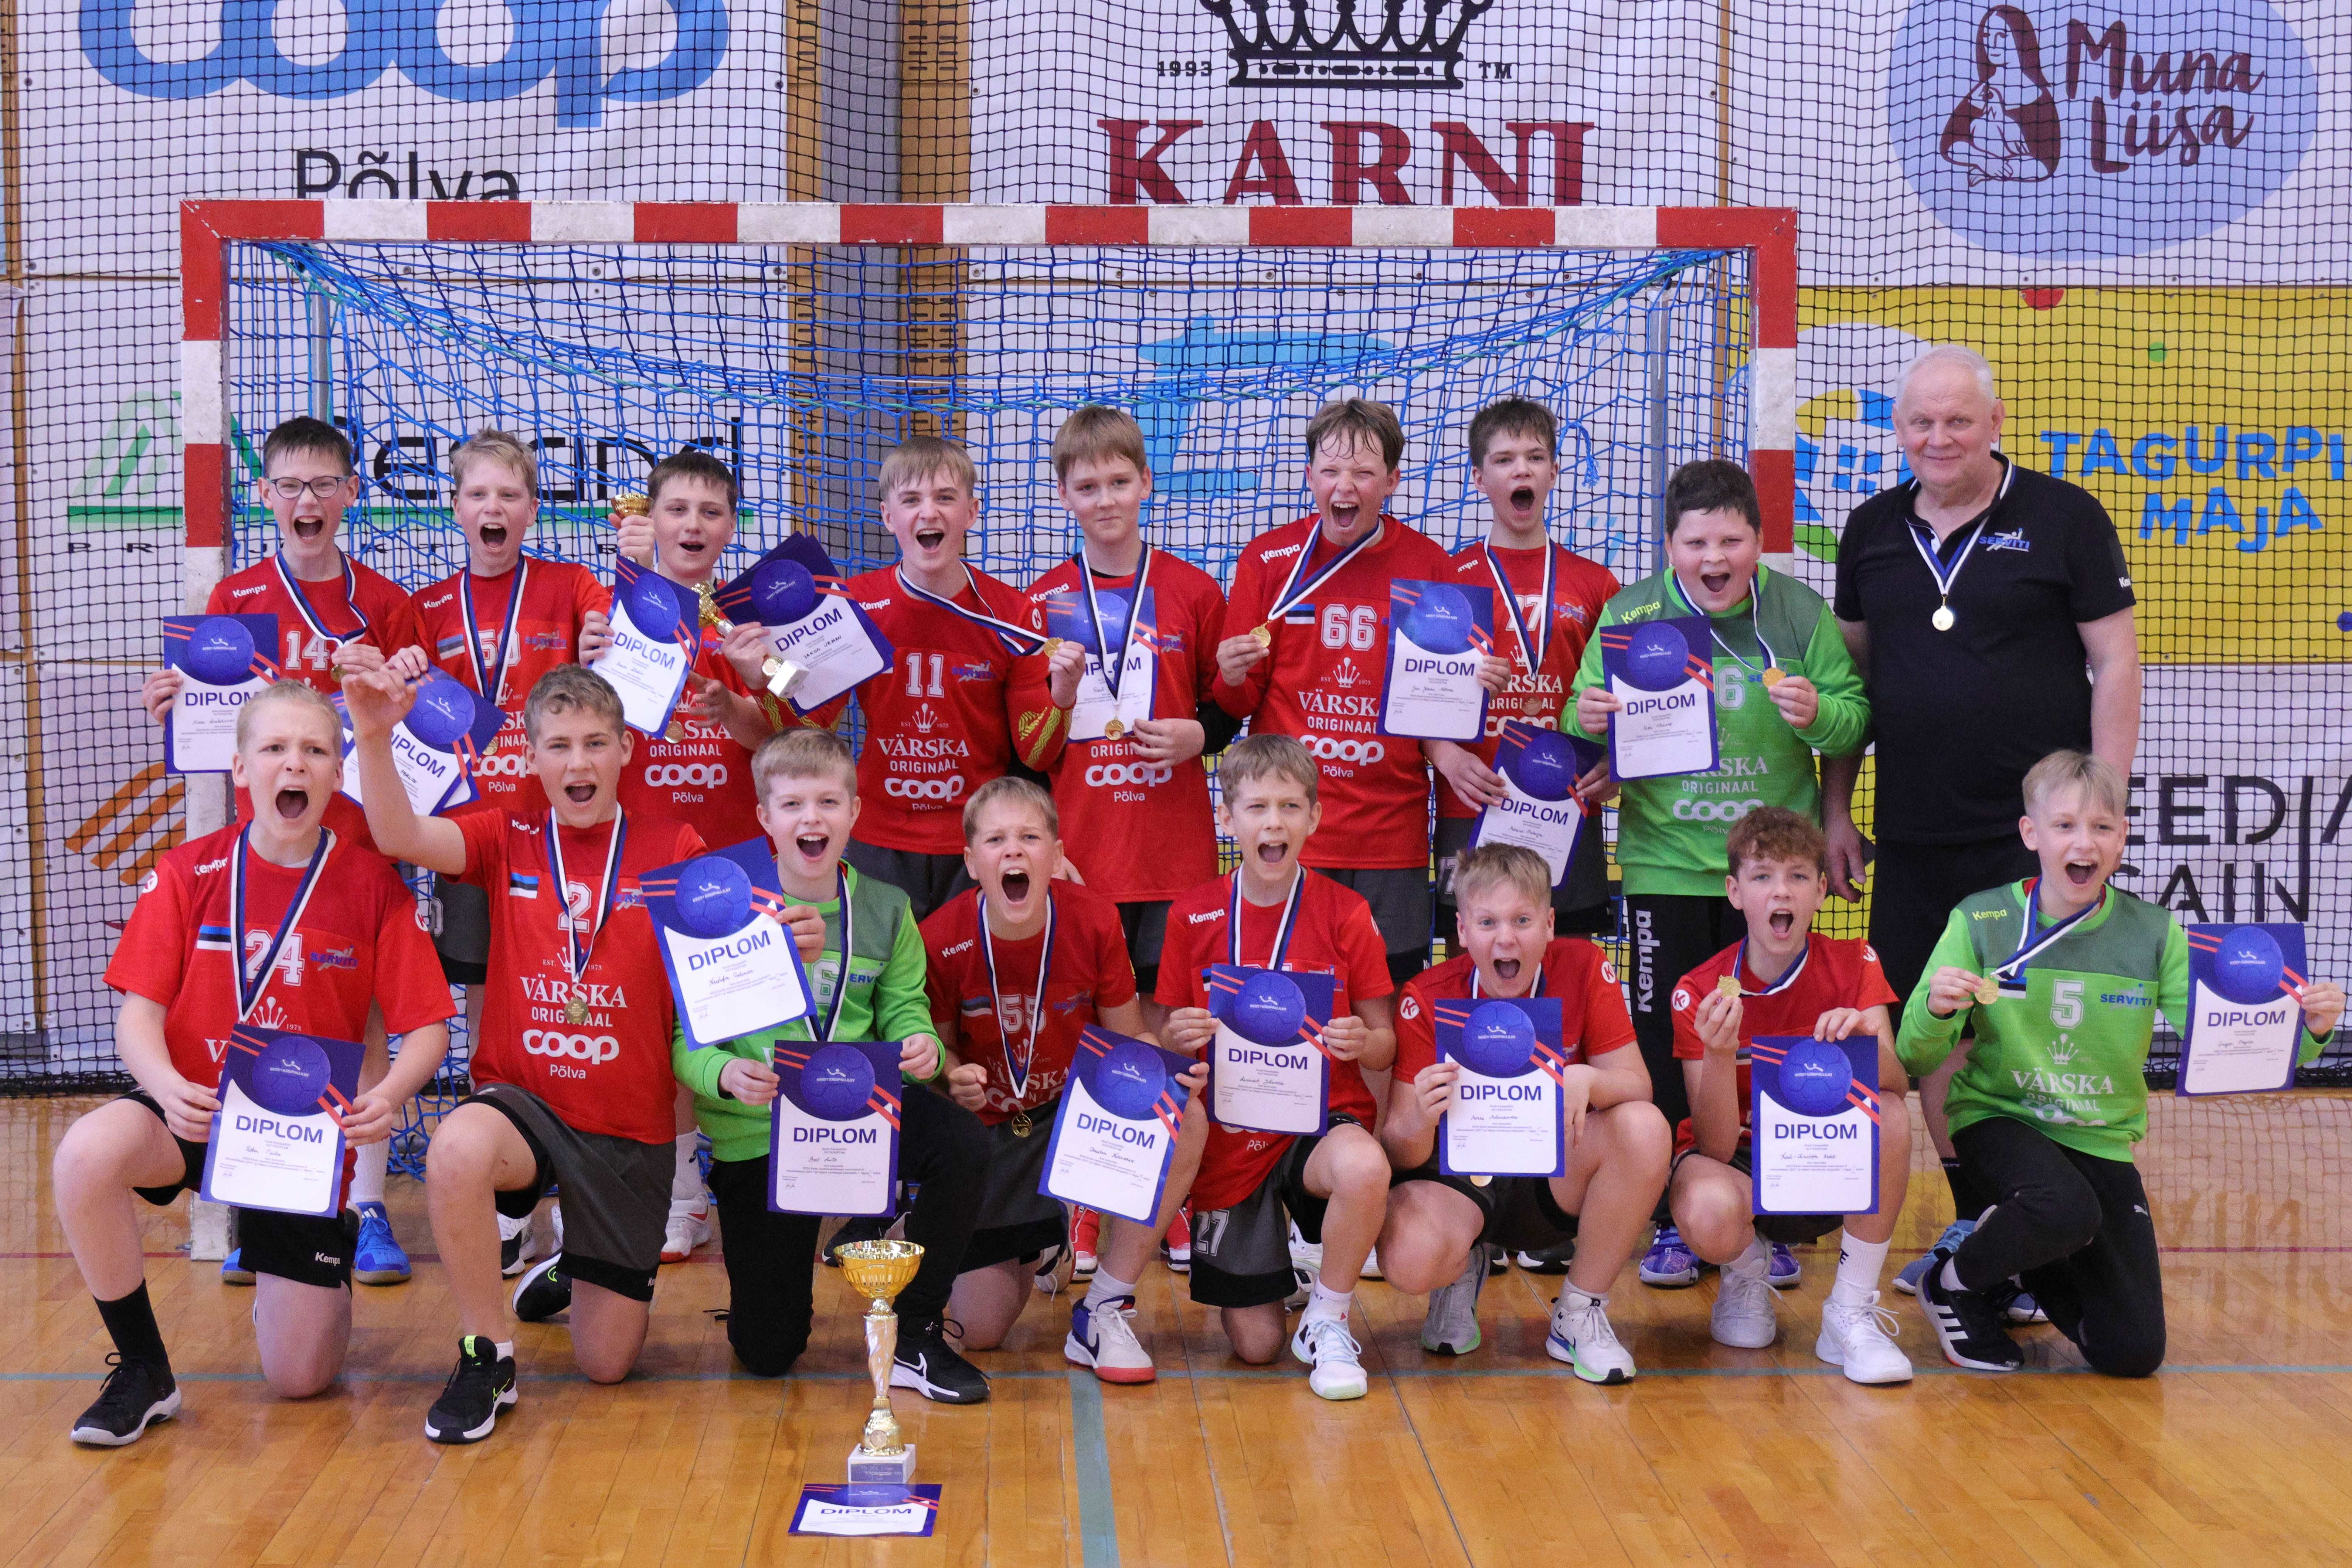 Põlva Käsipalliklubi/Põlva Spordikooli võistkond on 2024 Eesti meister noormeeste D-vanuseklassi käsipallis